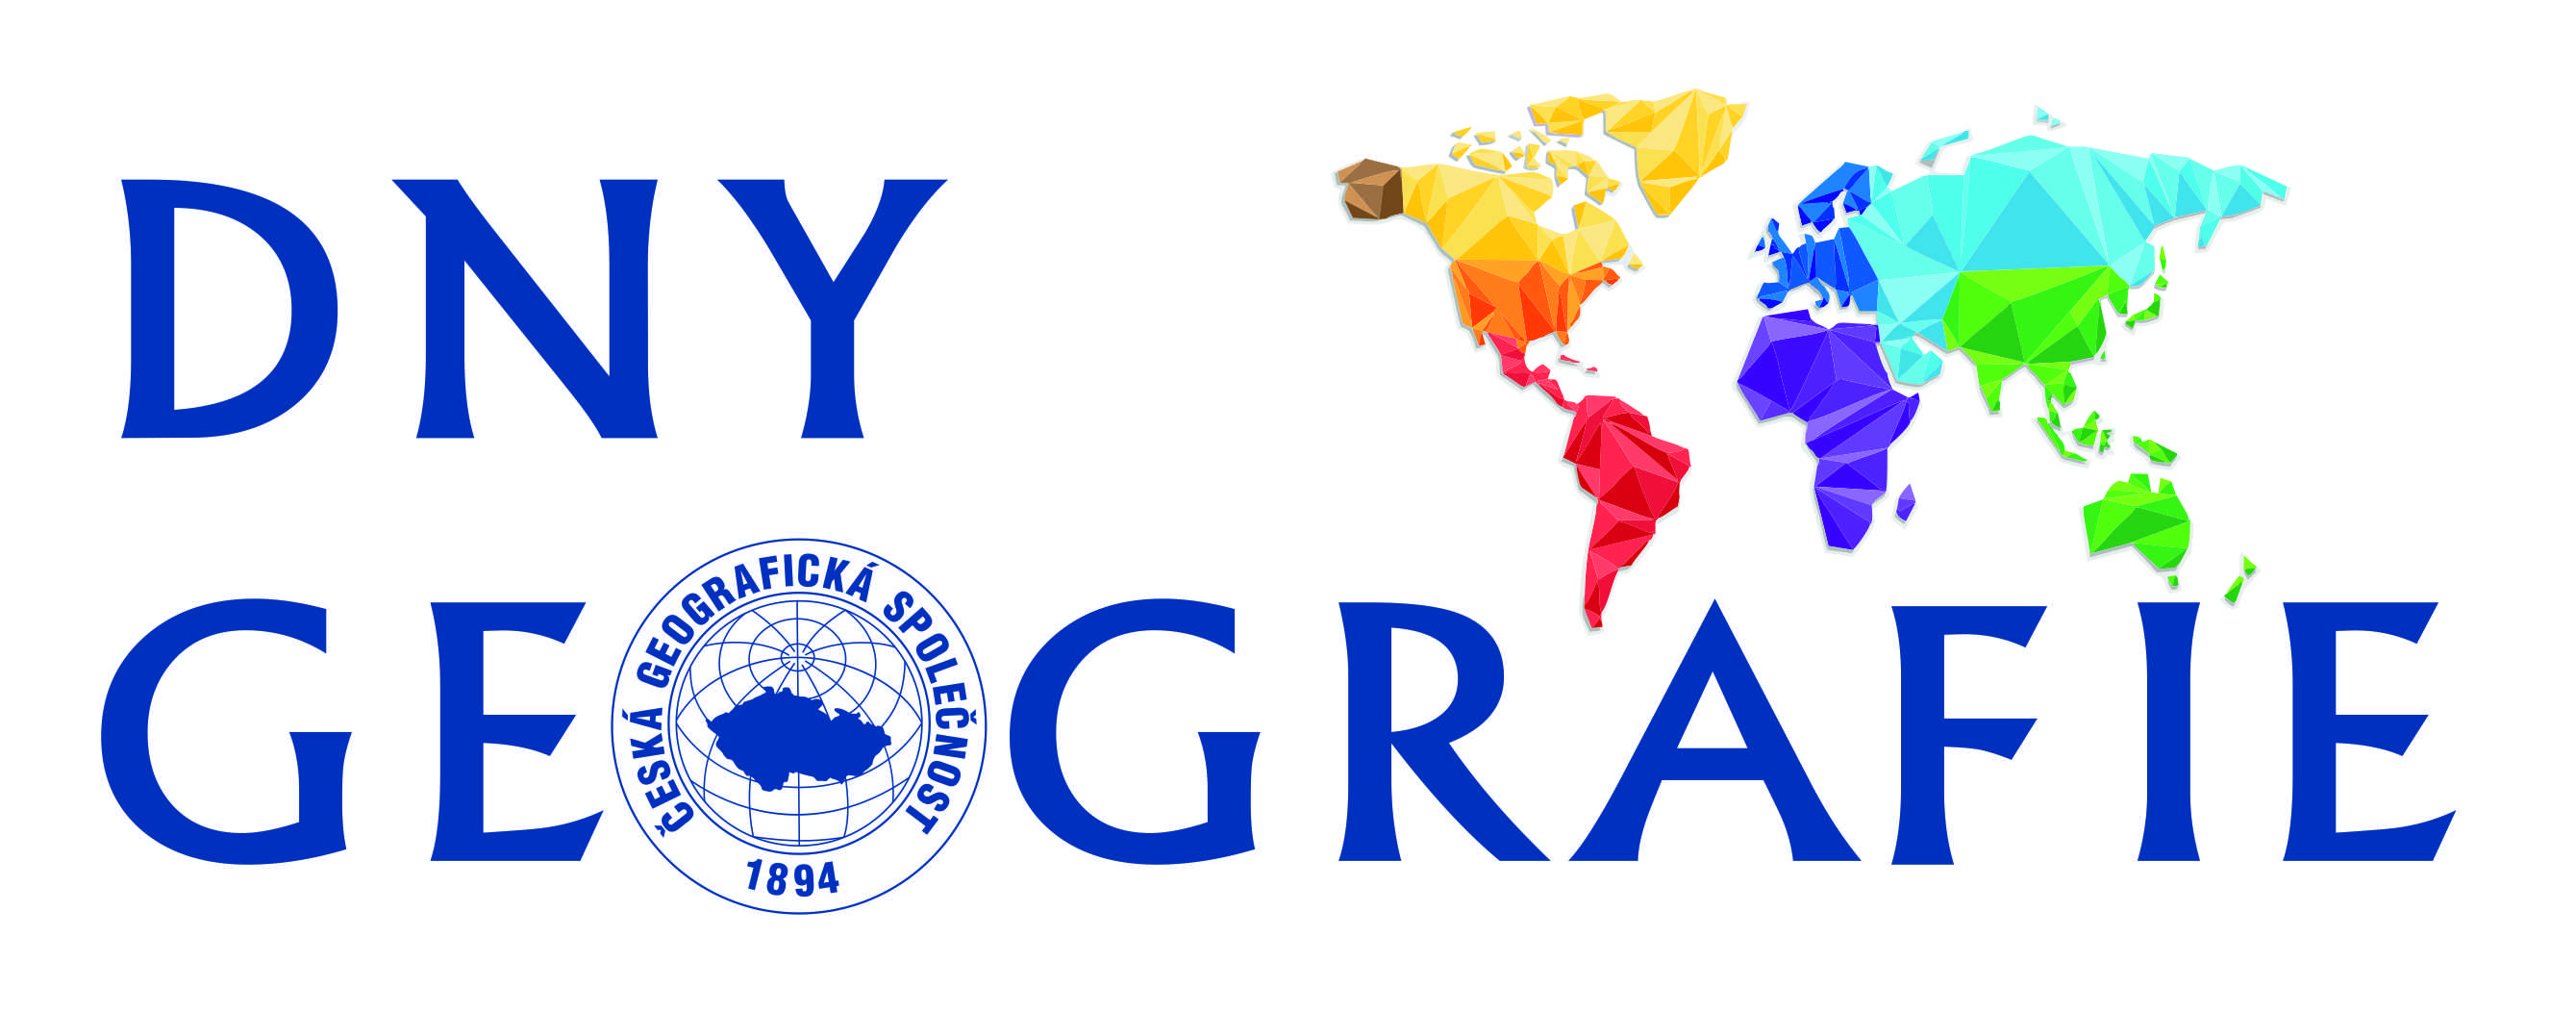 Dny geografie_logo_CMYK.jpg